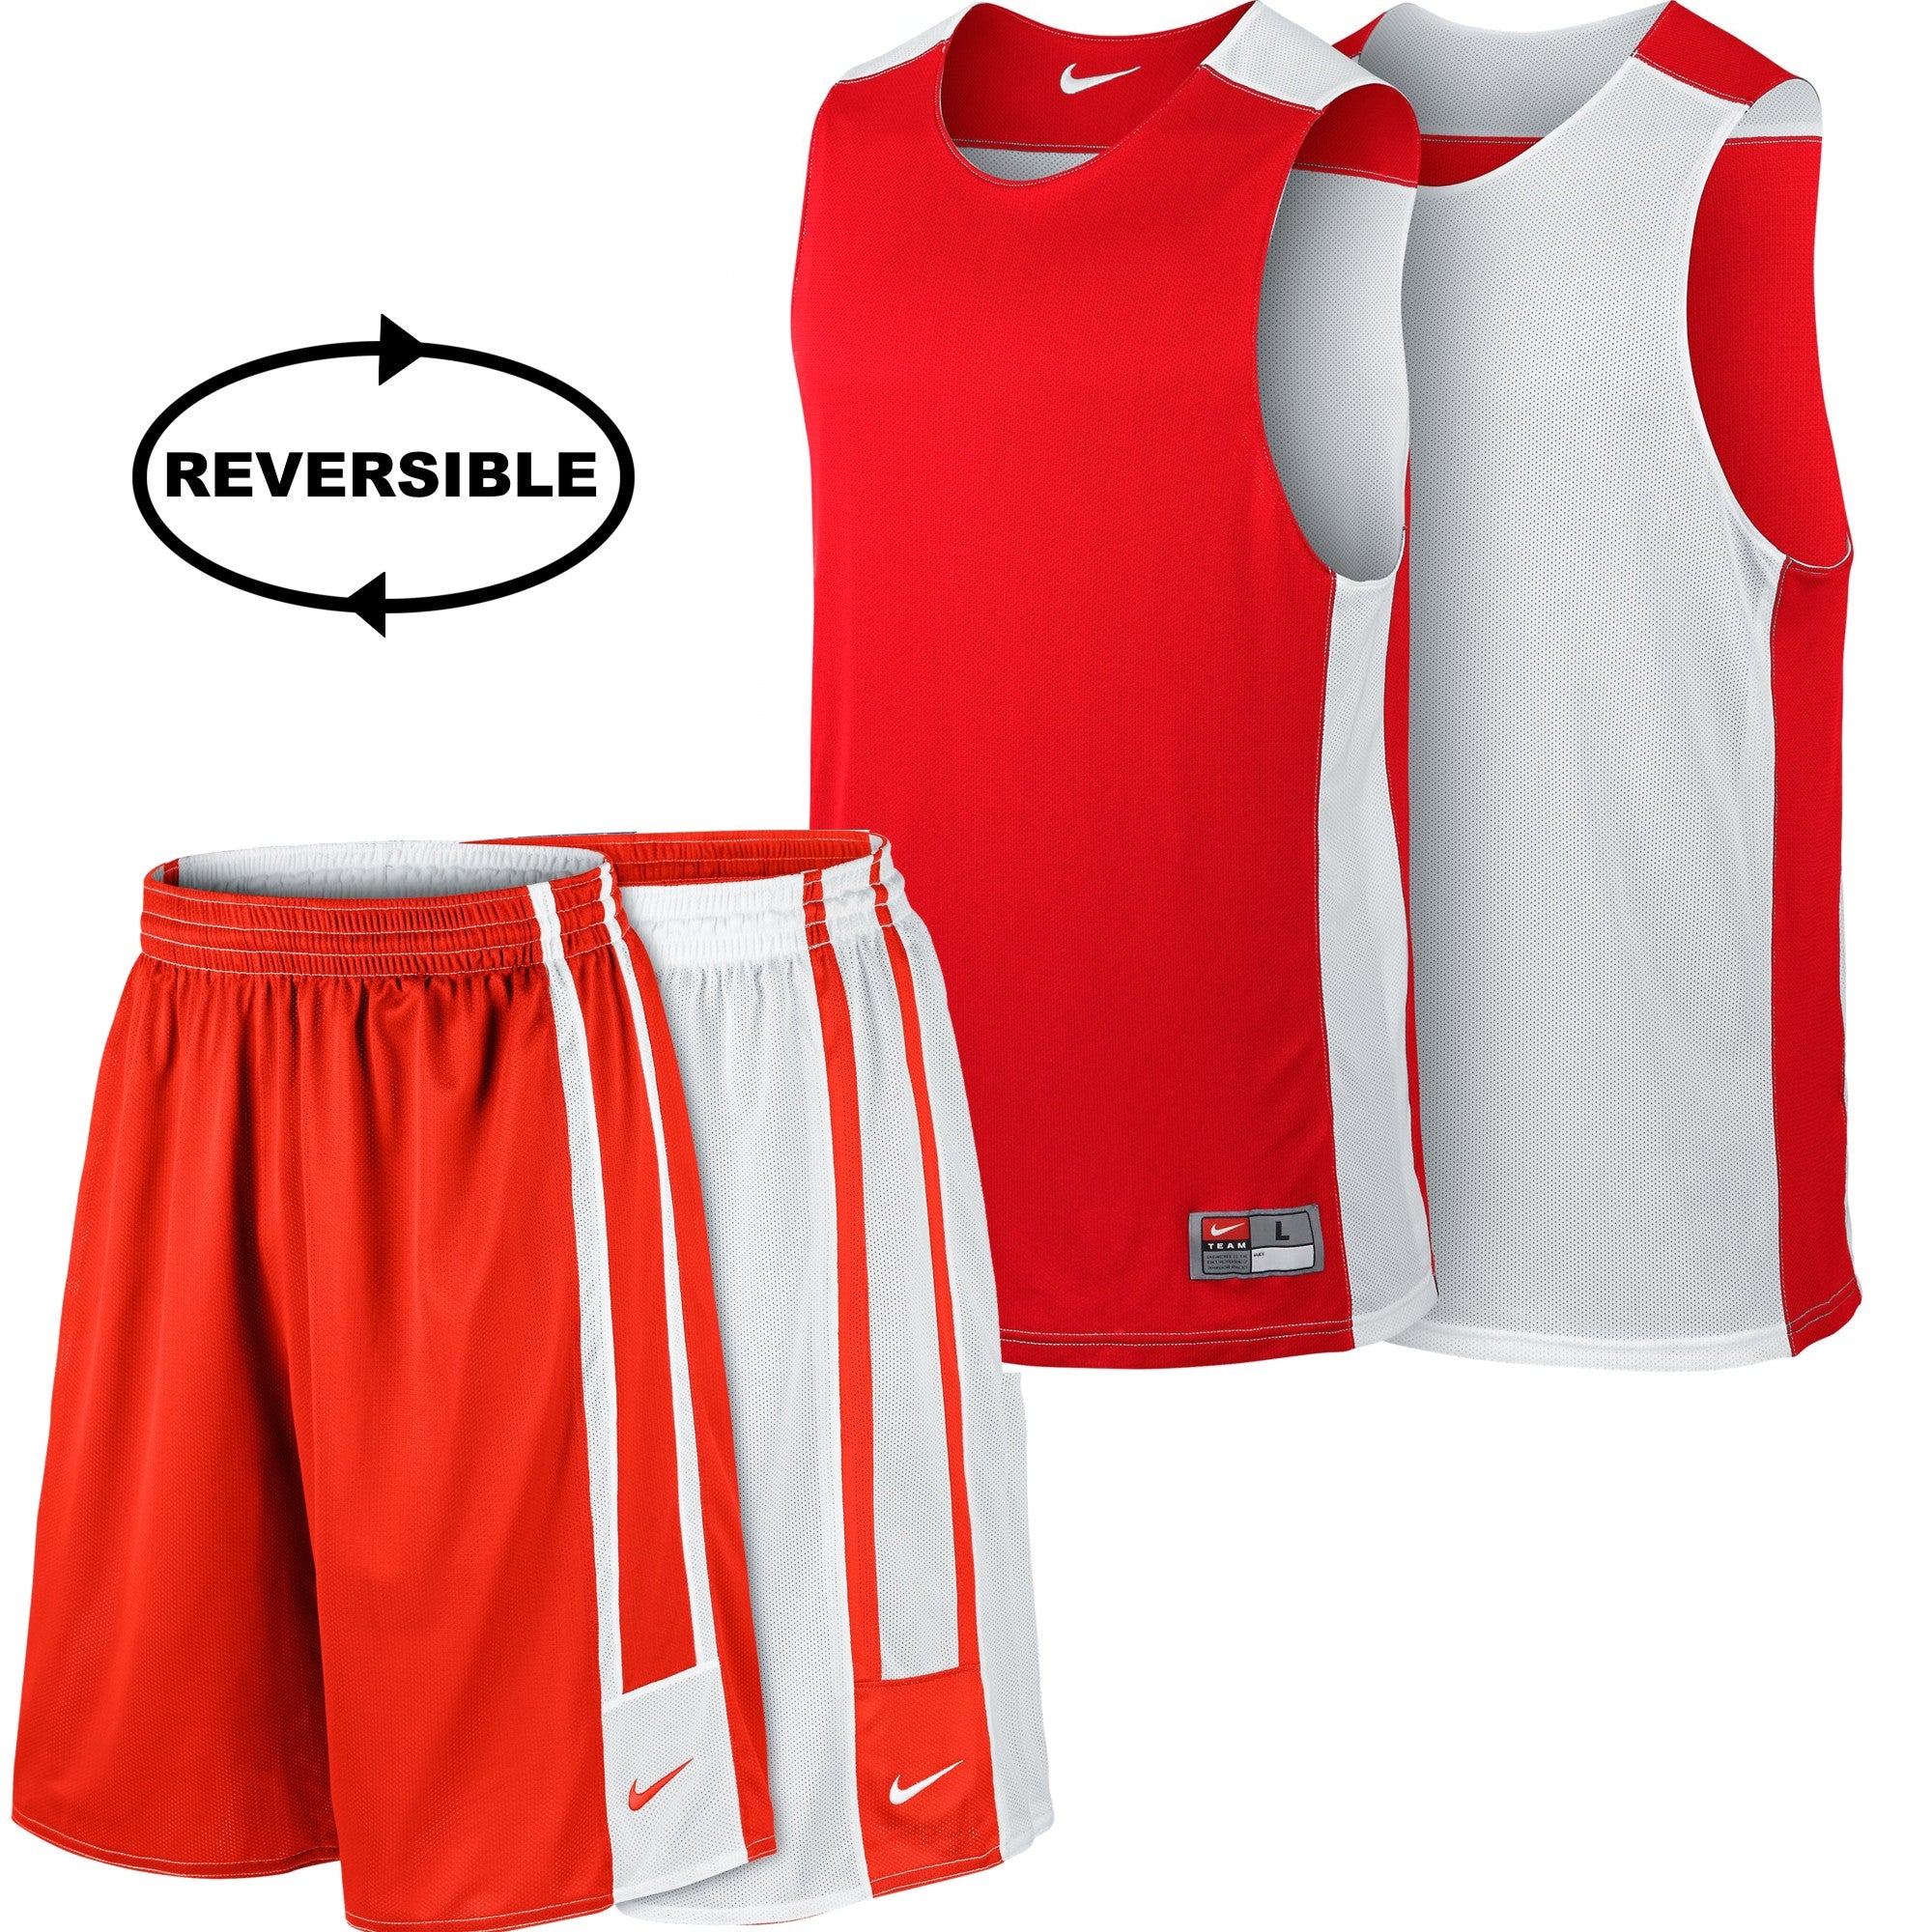 Nike Basketball League Reversible 